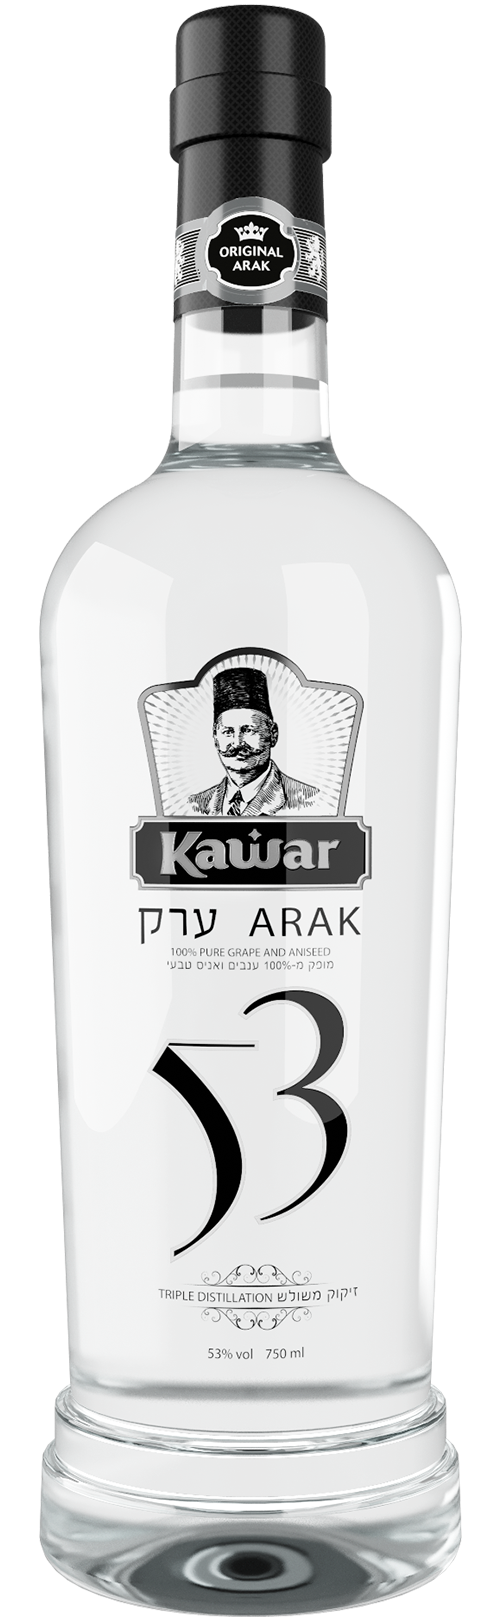 Kawar 53% Special Edition Arak Liqueur